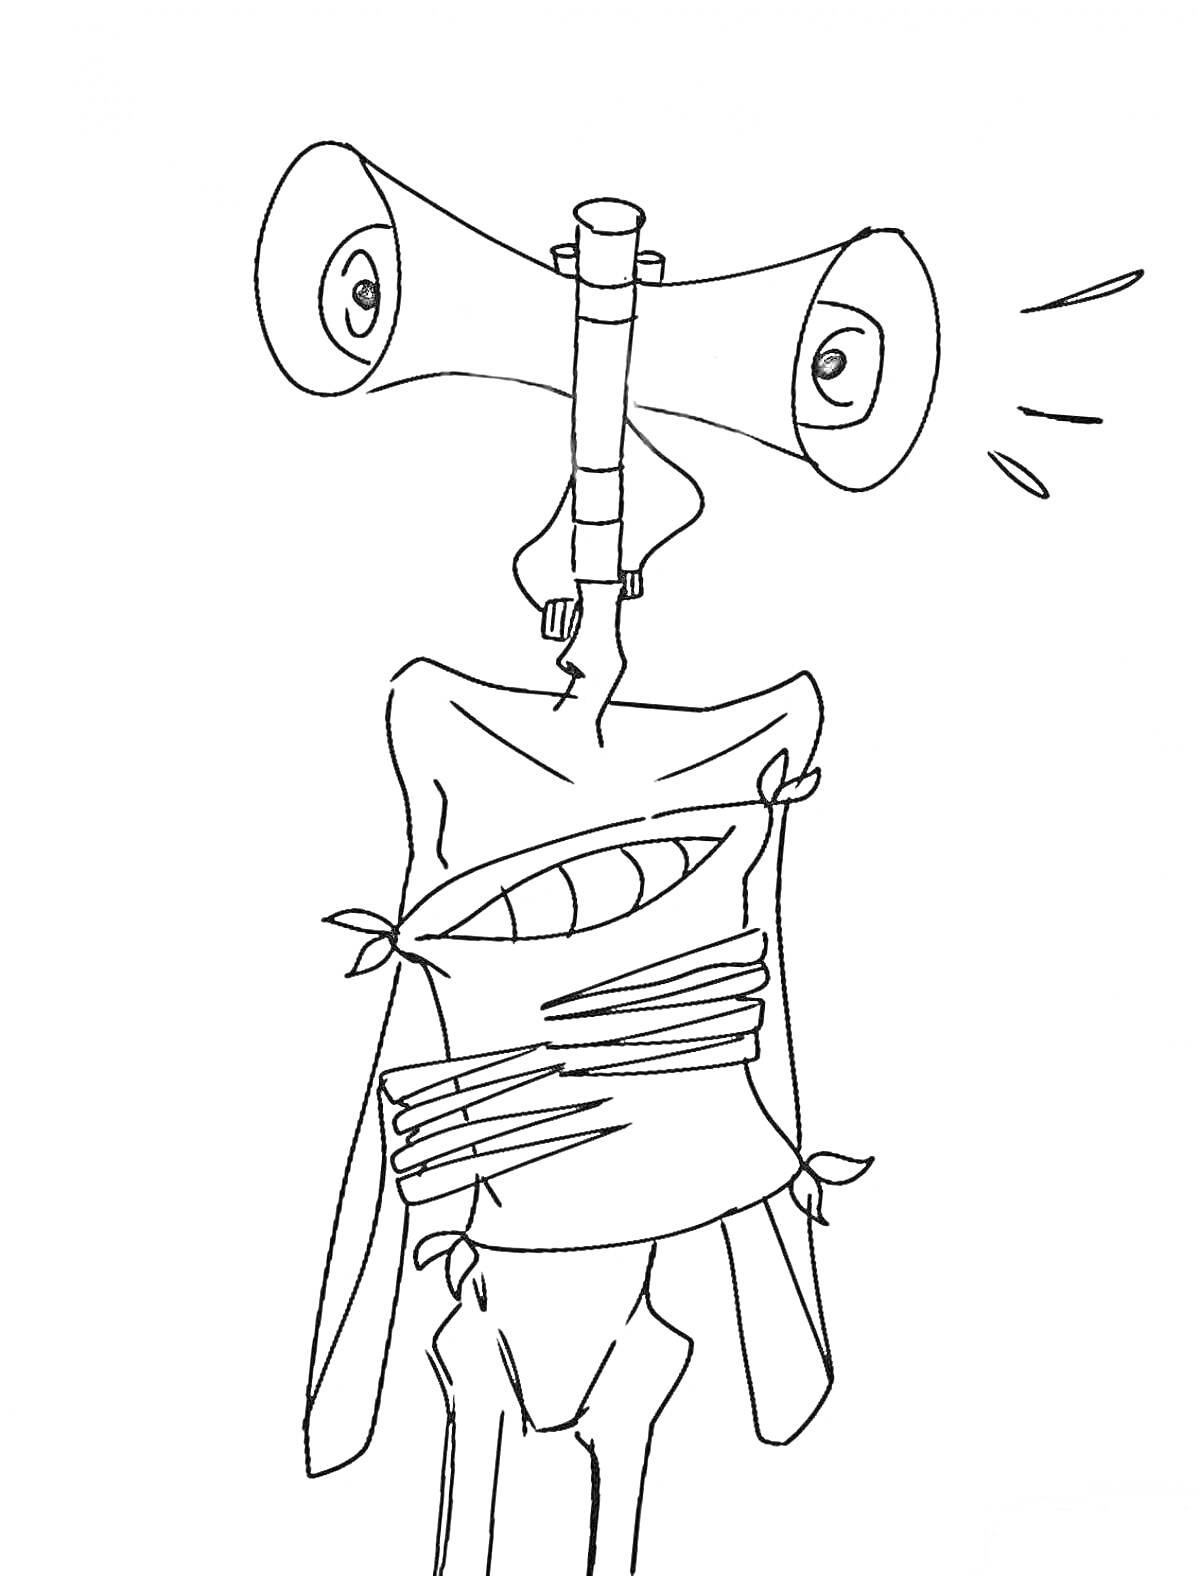 Раскраска Сиреноголовый монстр с сиренами вместо головы, обмотанный бинтами